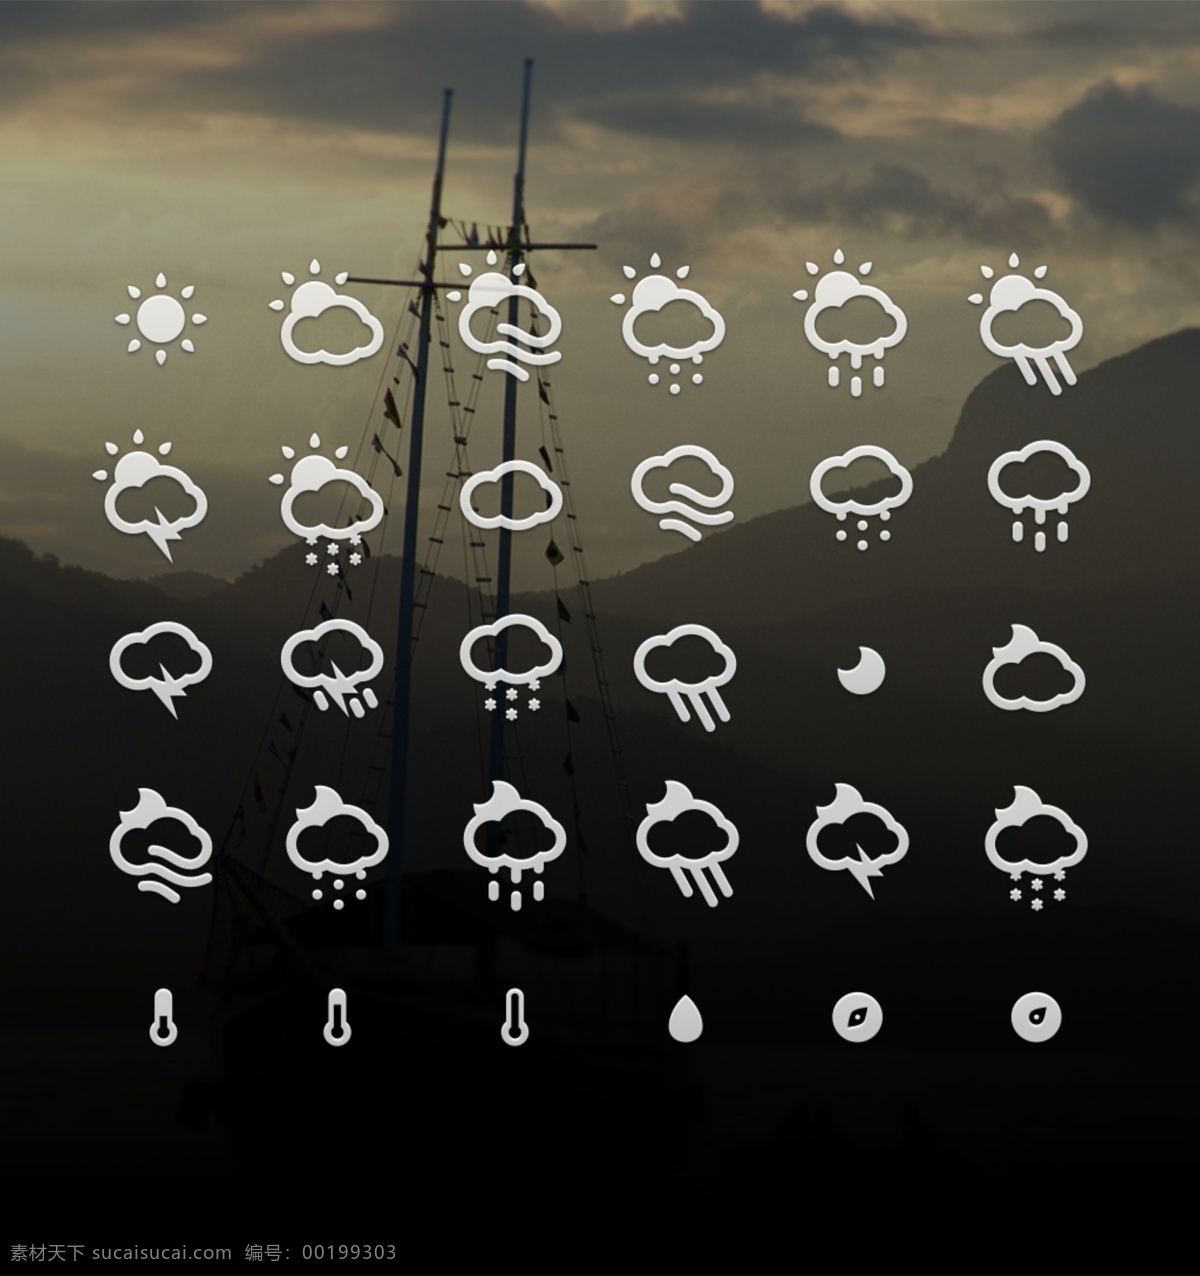 手机 app 天气 控件 图标 天气控件设计 天气控件 天气图标 天气icon icon设计 icon 太阳图标 下雨图标 阴天图标 雨天 温度计 手机图标